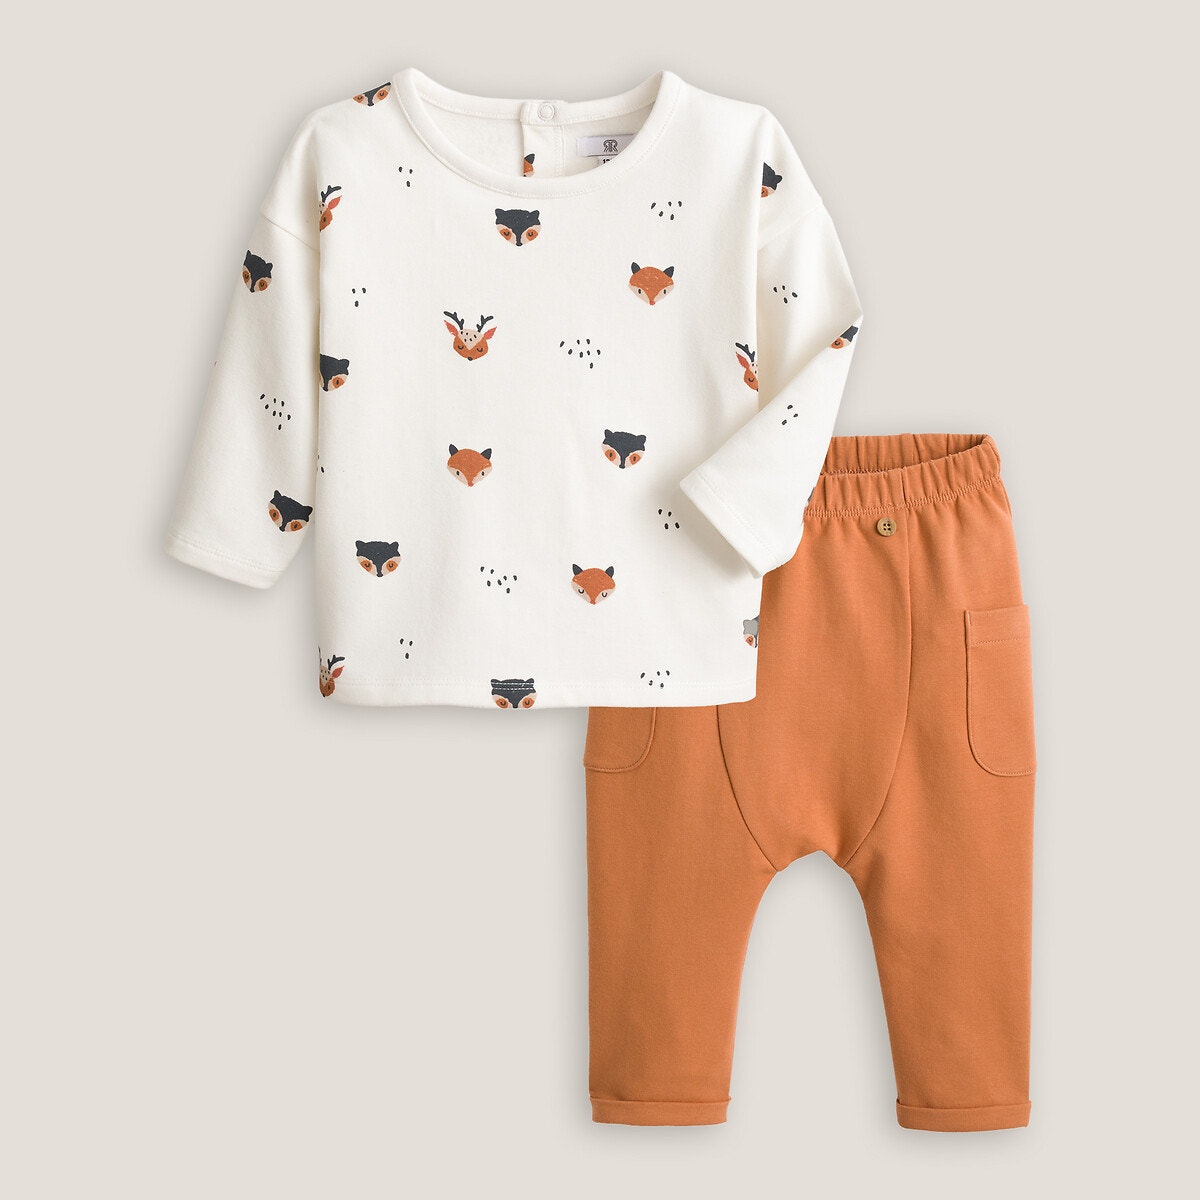 ΠΑΙΔΙ | Παντελόνια Φανελένιο σύνολο φούτερ και σαλβάρι, 1 μηνός - 3 ετών